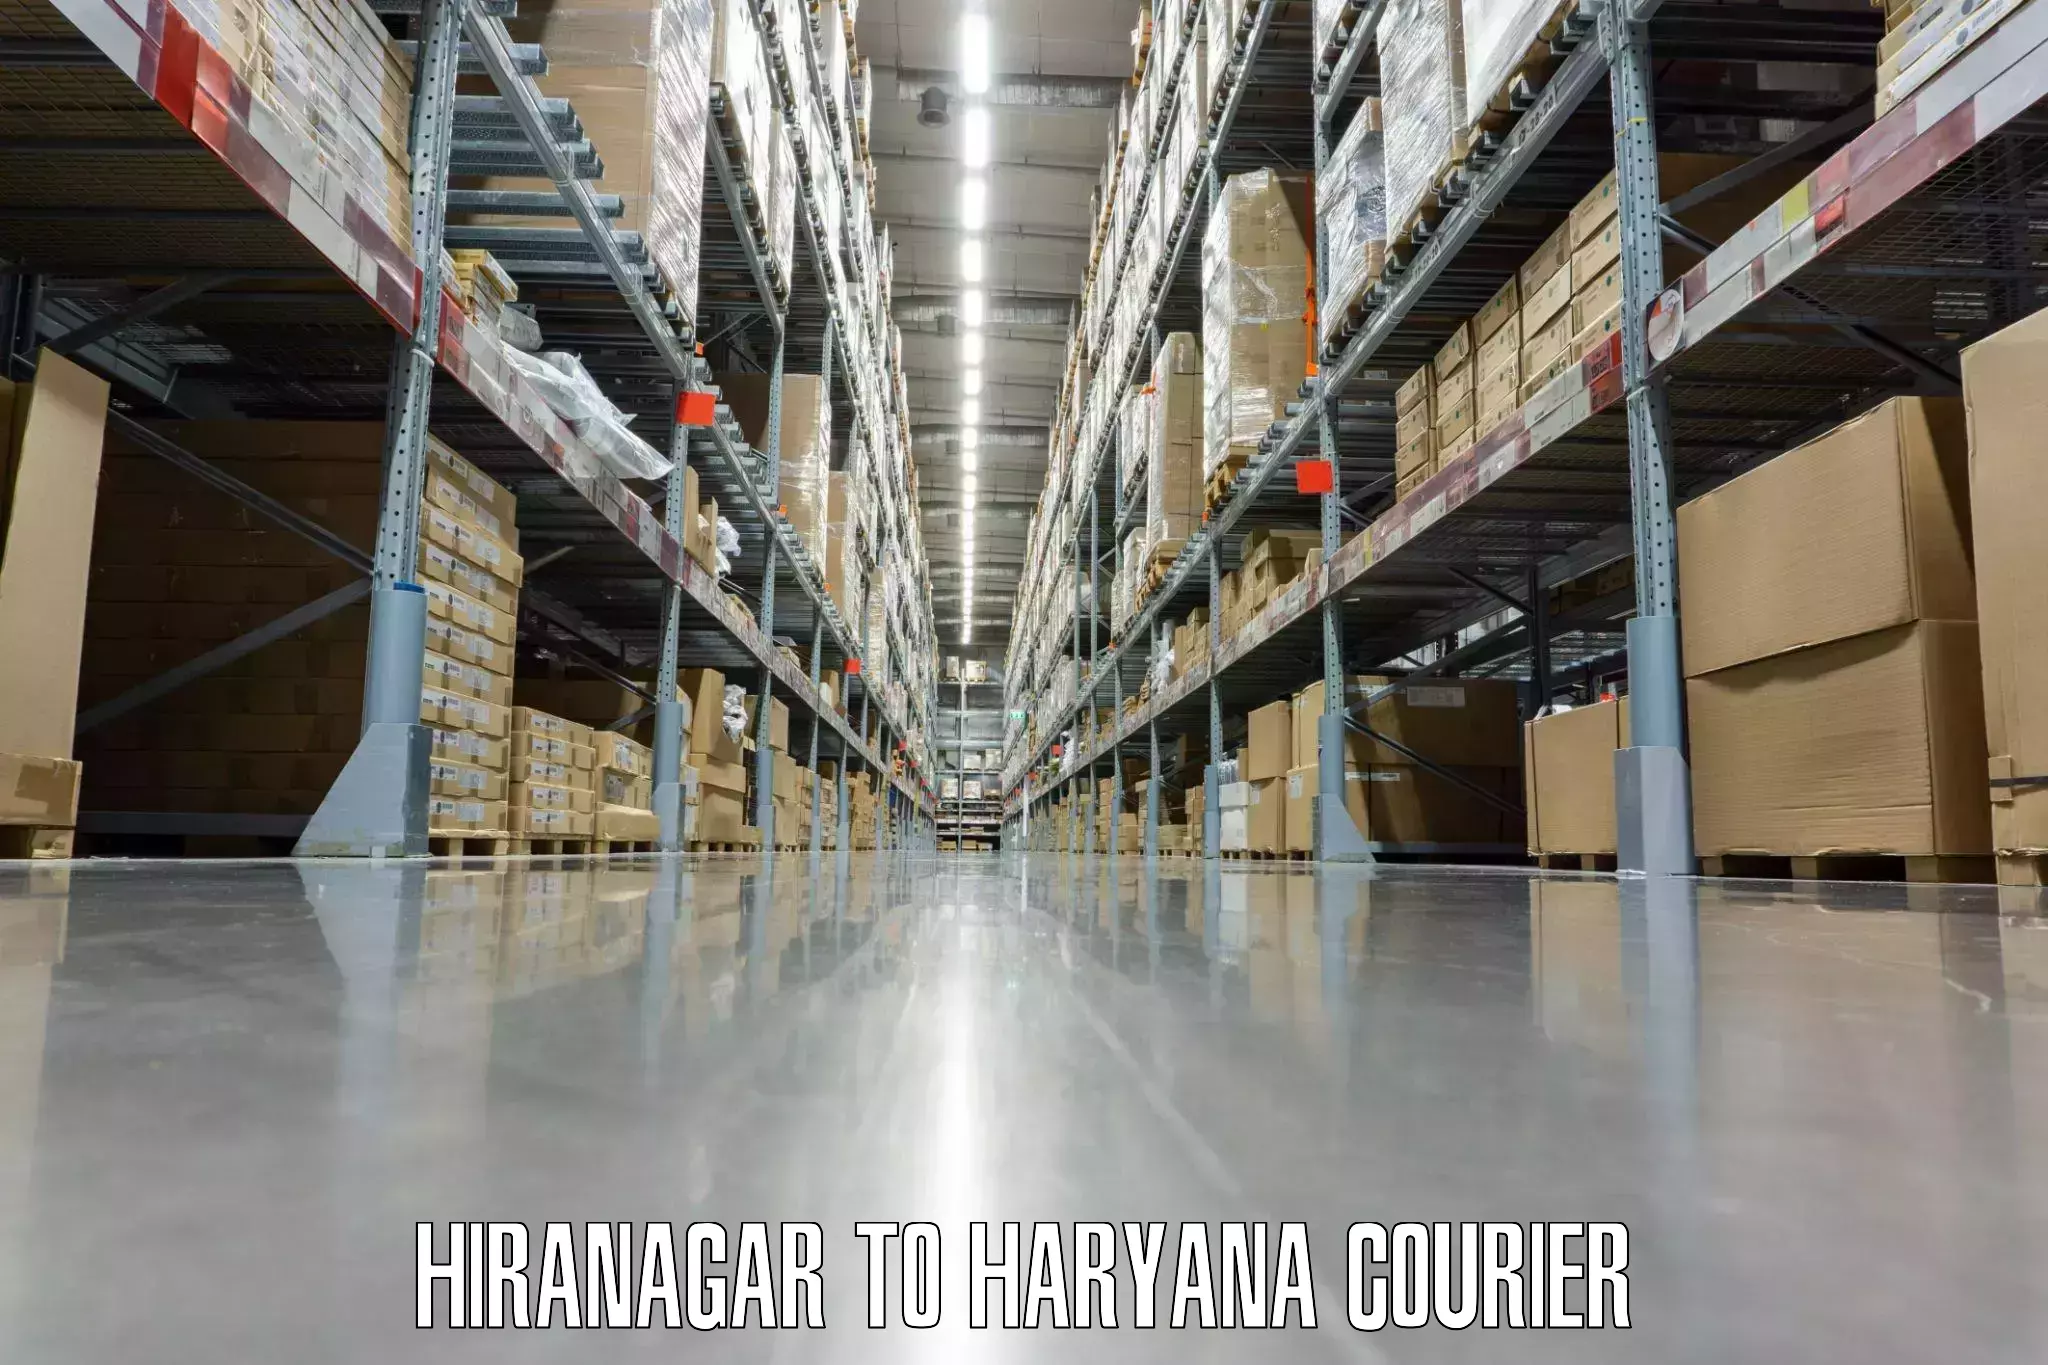 Baggage shipping service Hiranagar to Ambala